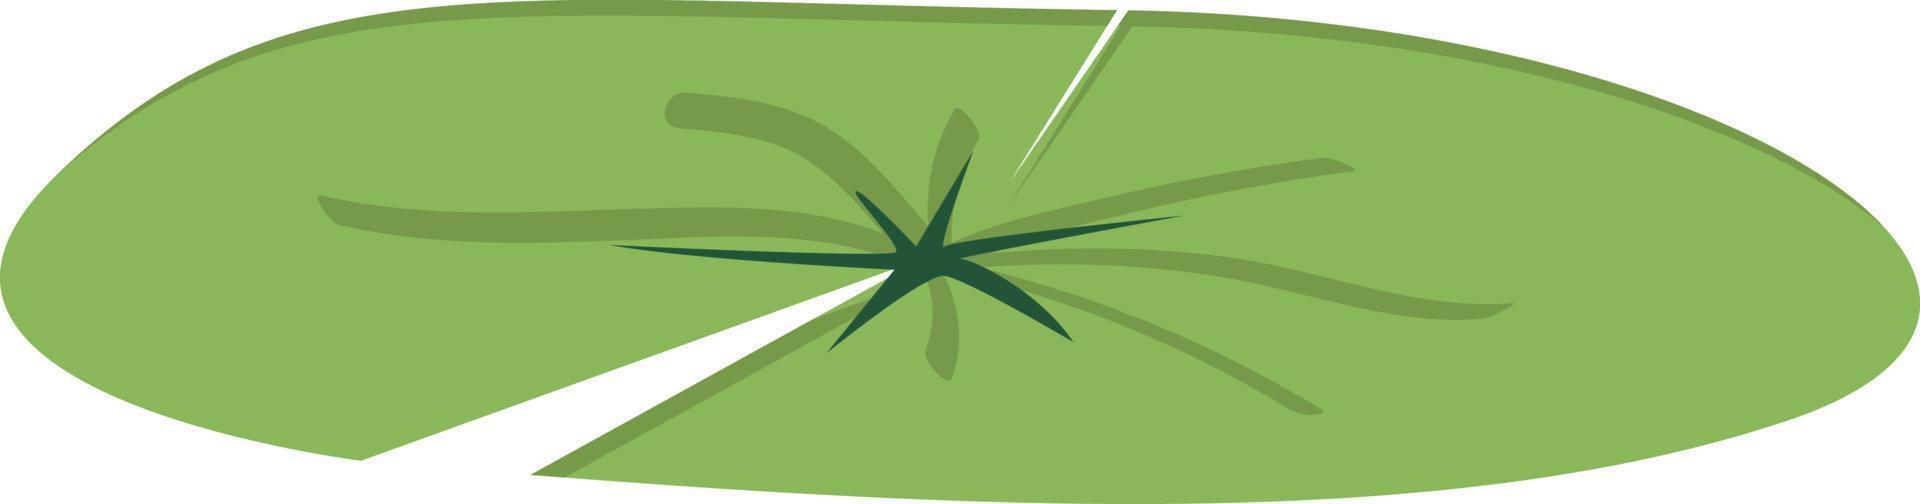 Lotusblatt-Clipart. grünes Lotusblatt-Vektordesign. einfache niedliche lotusblattkarikaturartillustration lokalisiert auf weißem hintergrund. Blatt der Seerose Pflanze flachen Stil zeichnen vektor